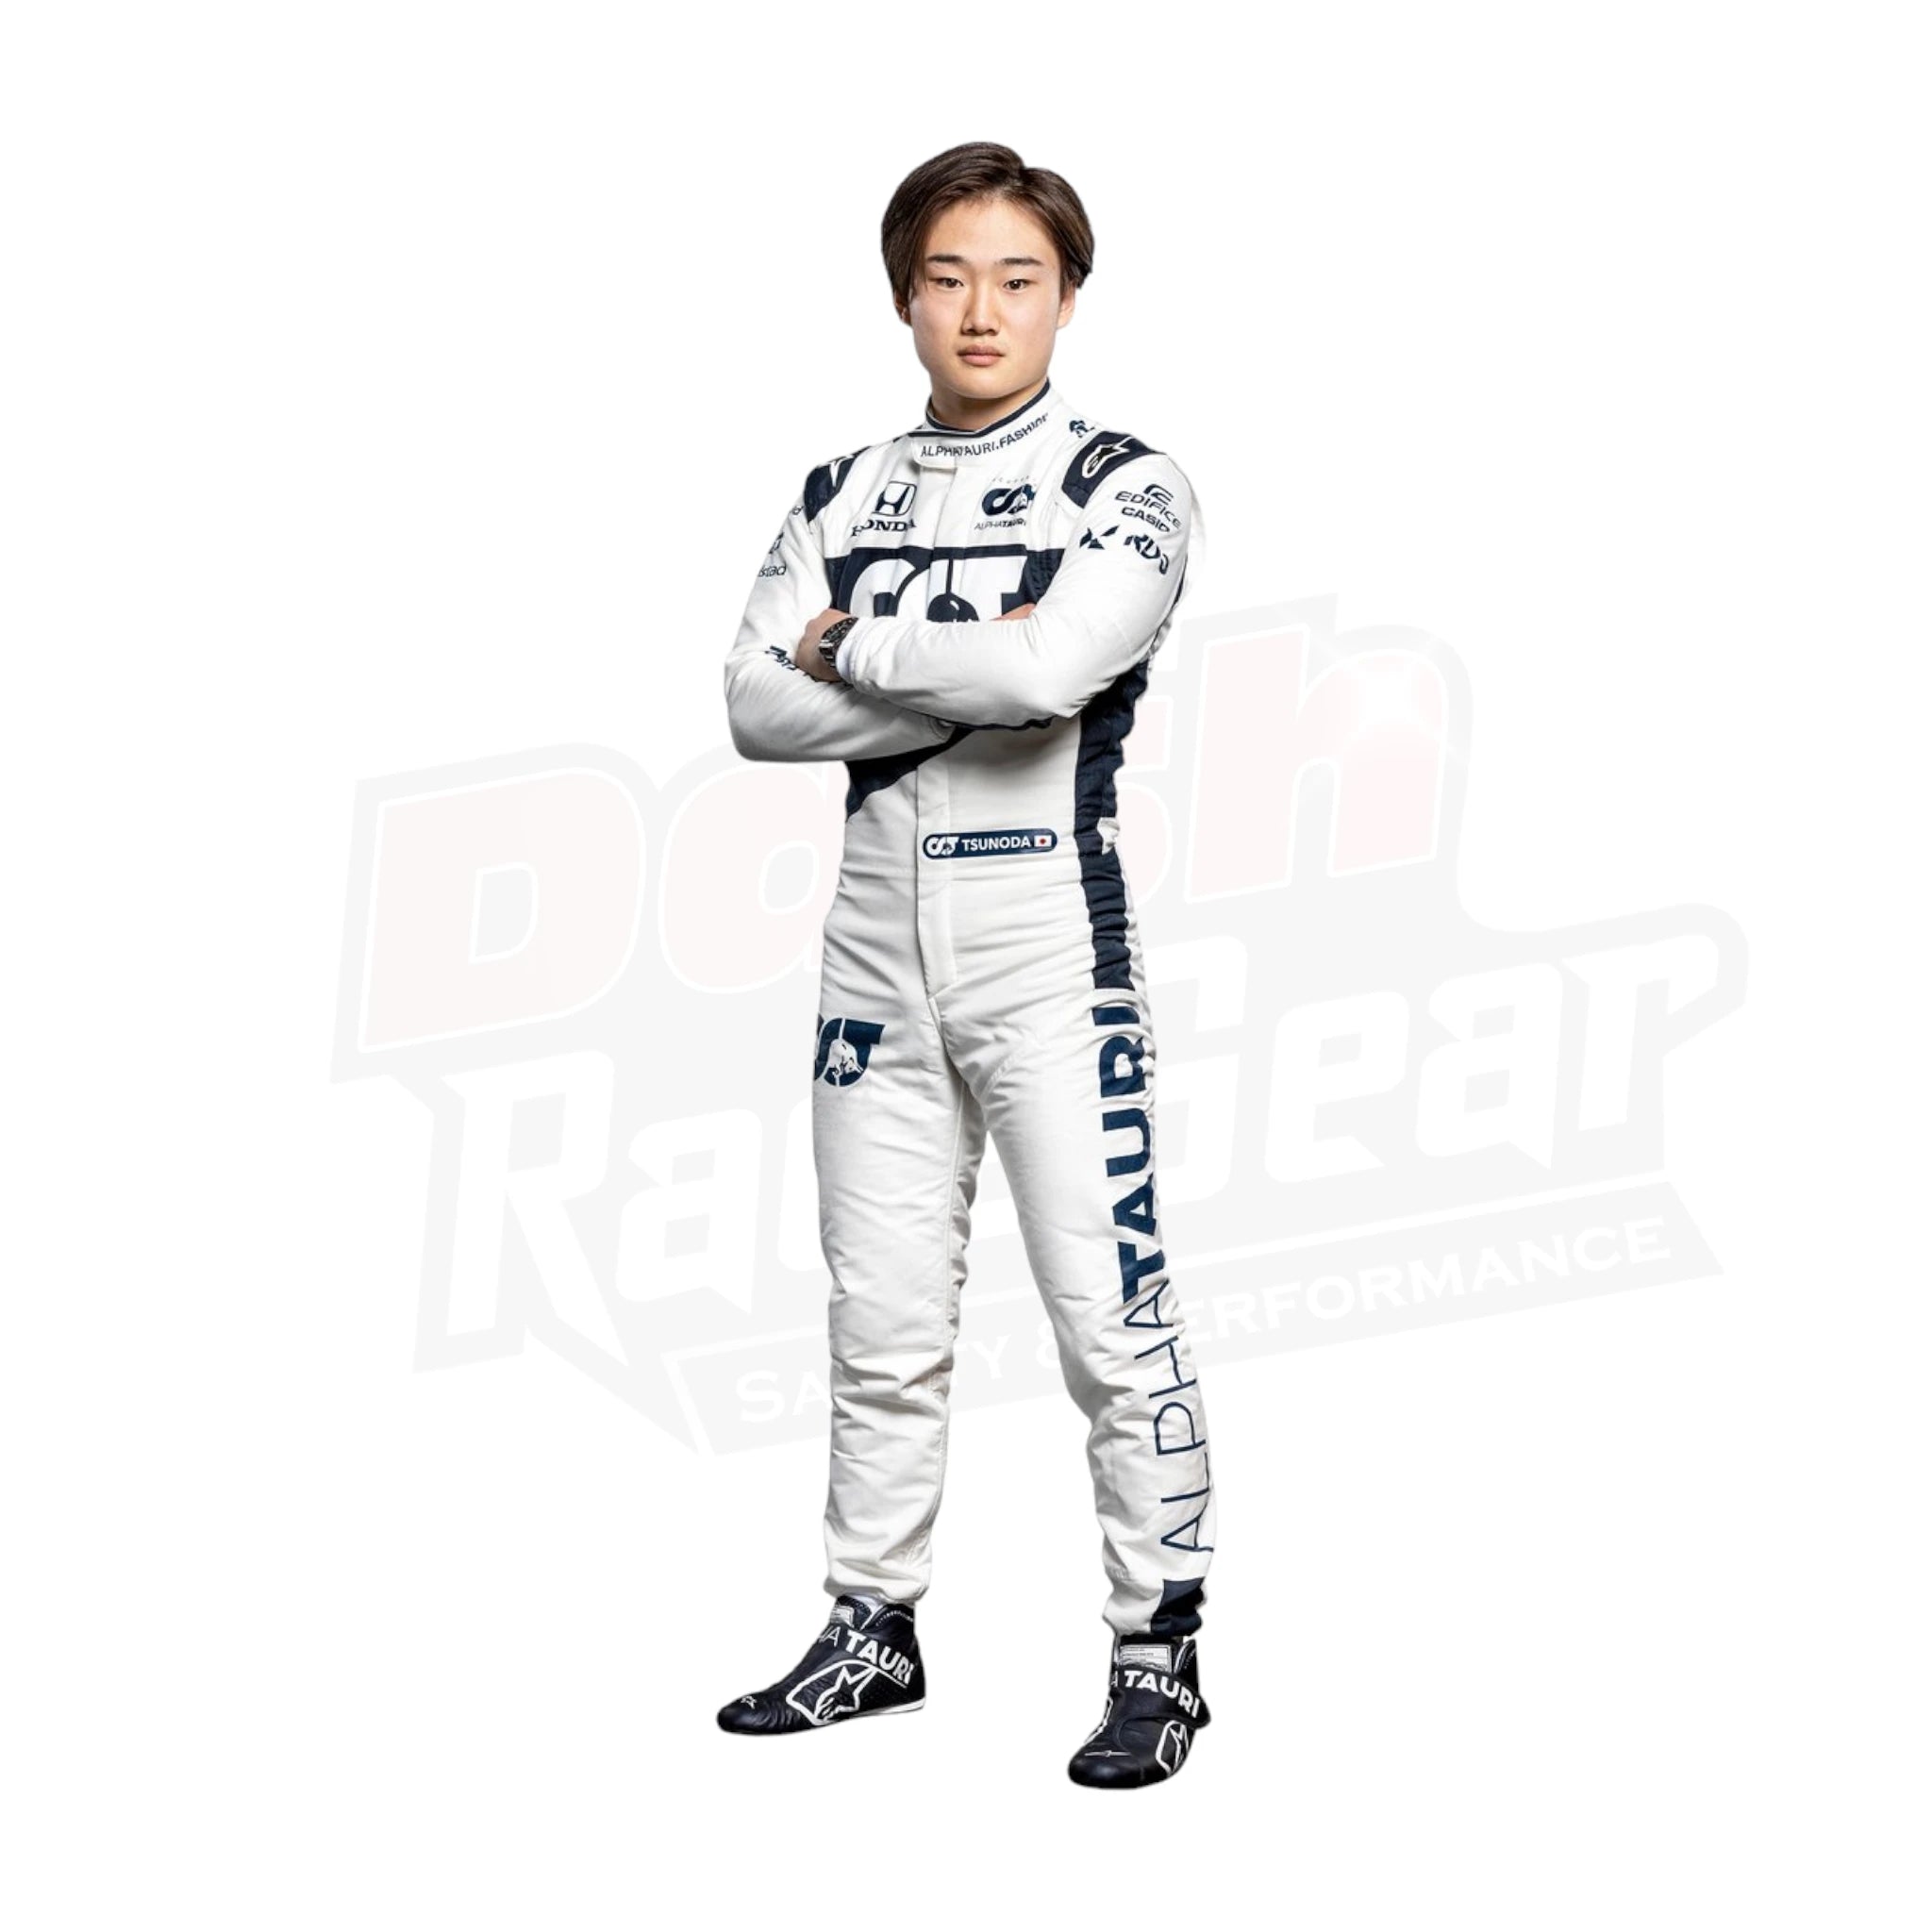 2021 Yuki Tsunoda Rookie Season AlphaTauri F1 Suit